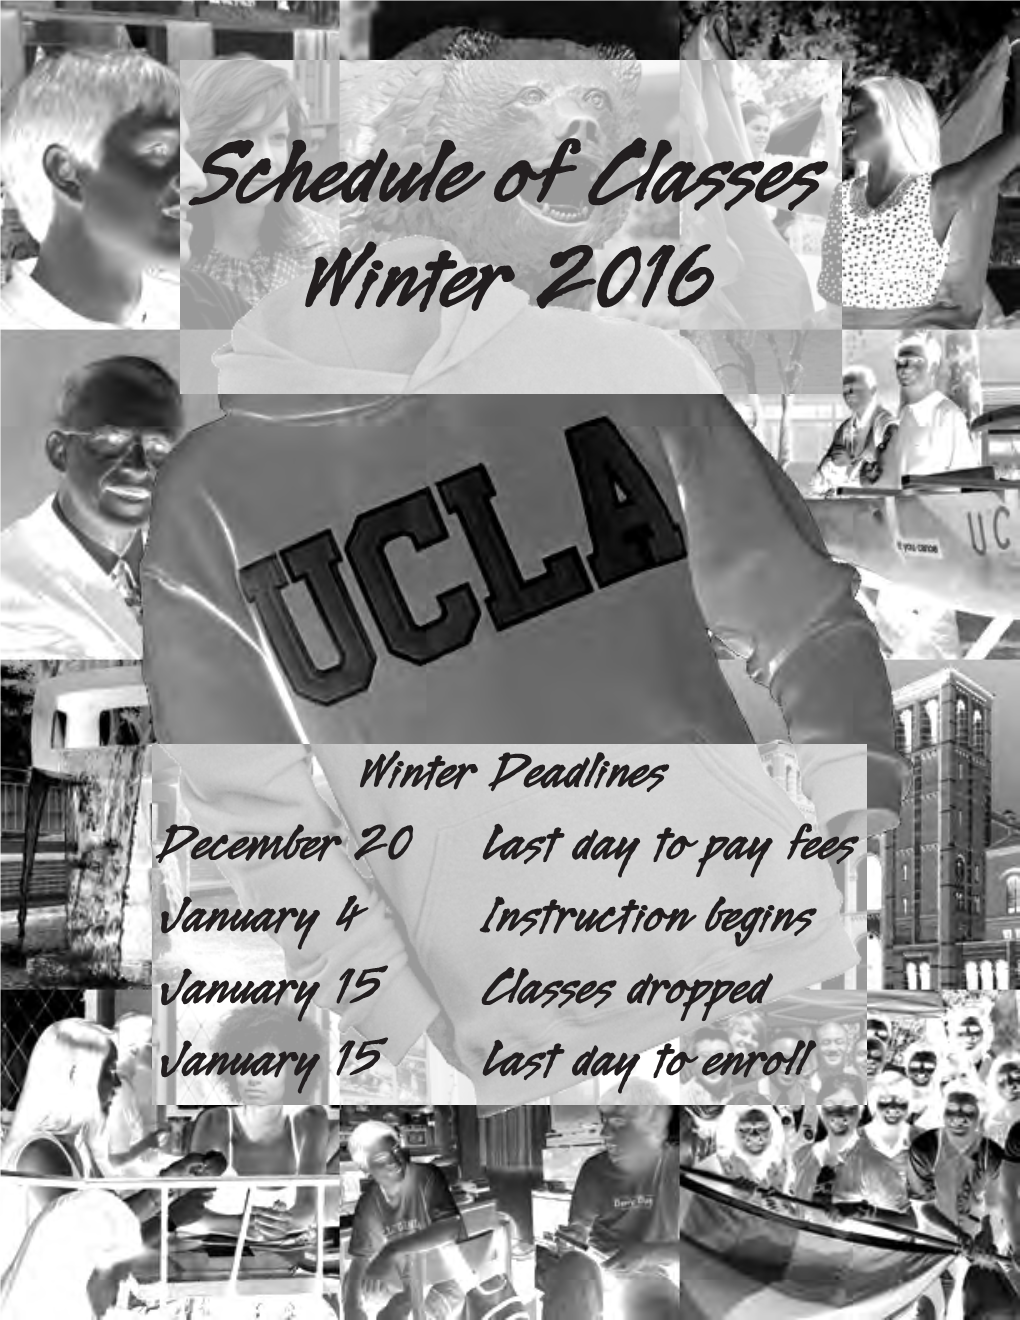 Schedule of Classes Winter 2016